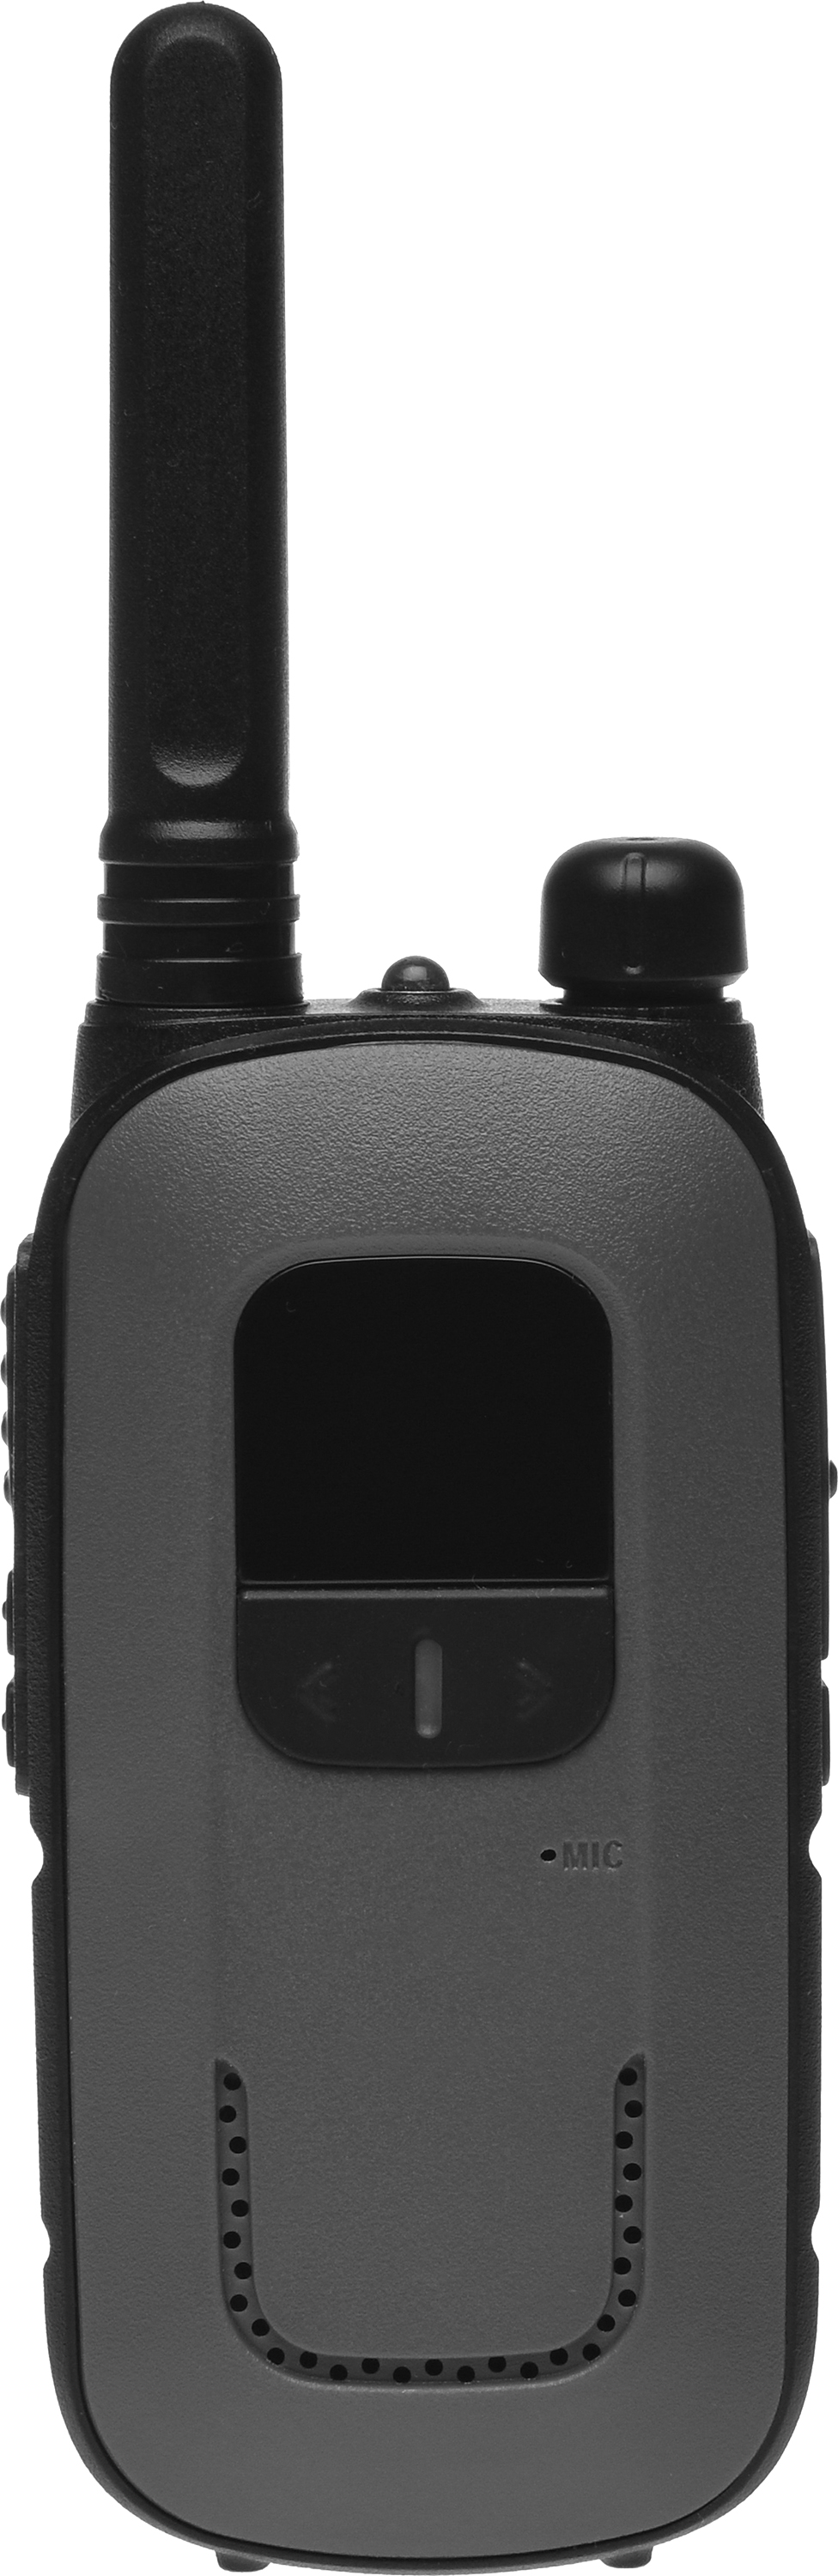 Портативная радиостанция AGENT AR-T12 Grey